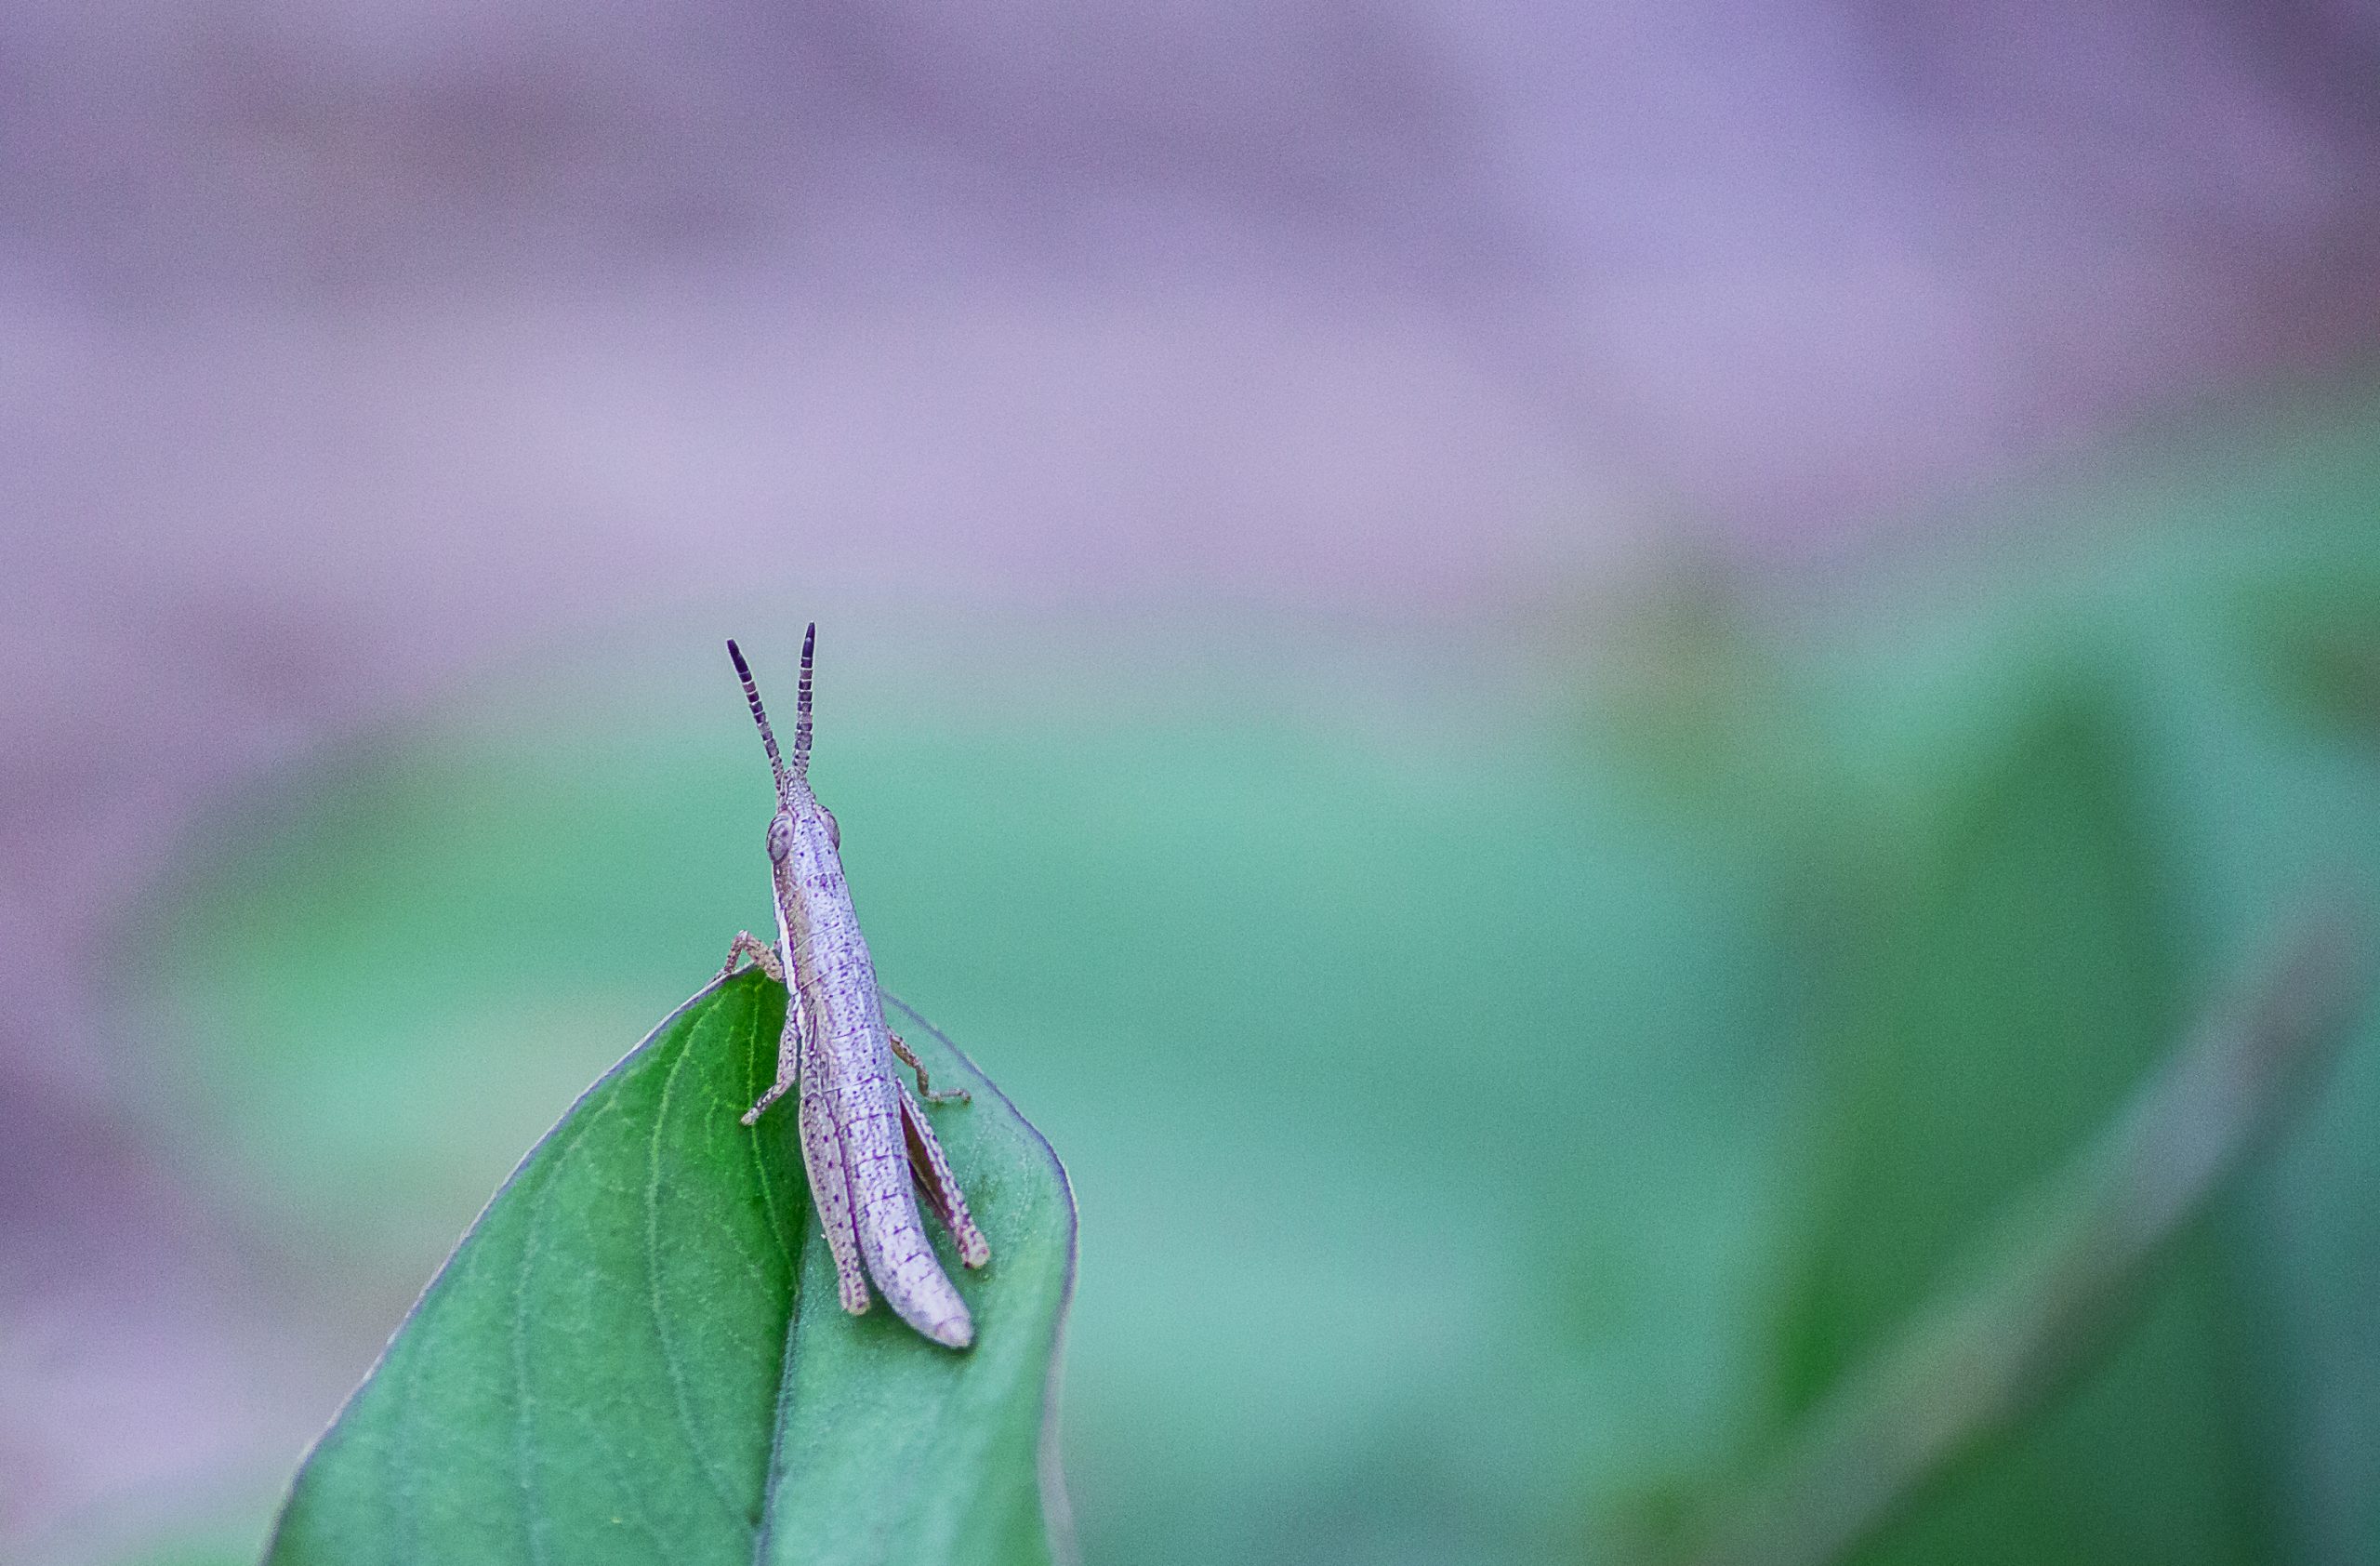 Grasshopper sitting on the Leaf